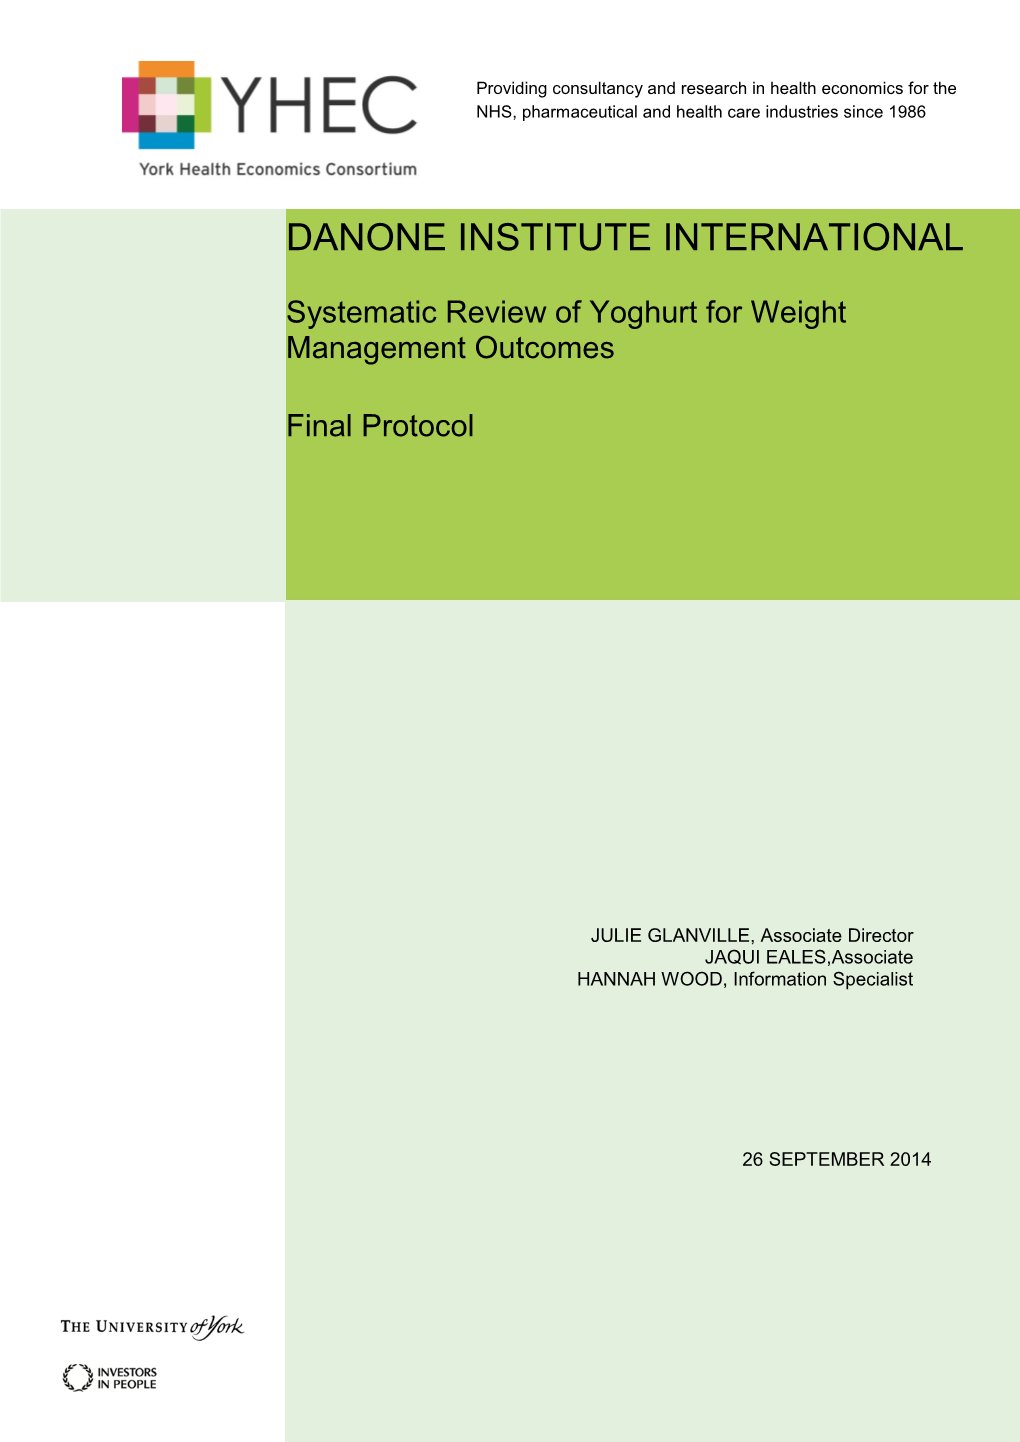 Danone Institute International